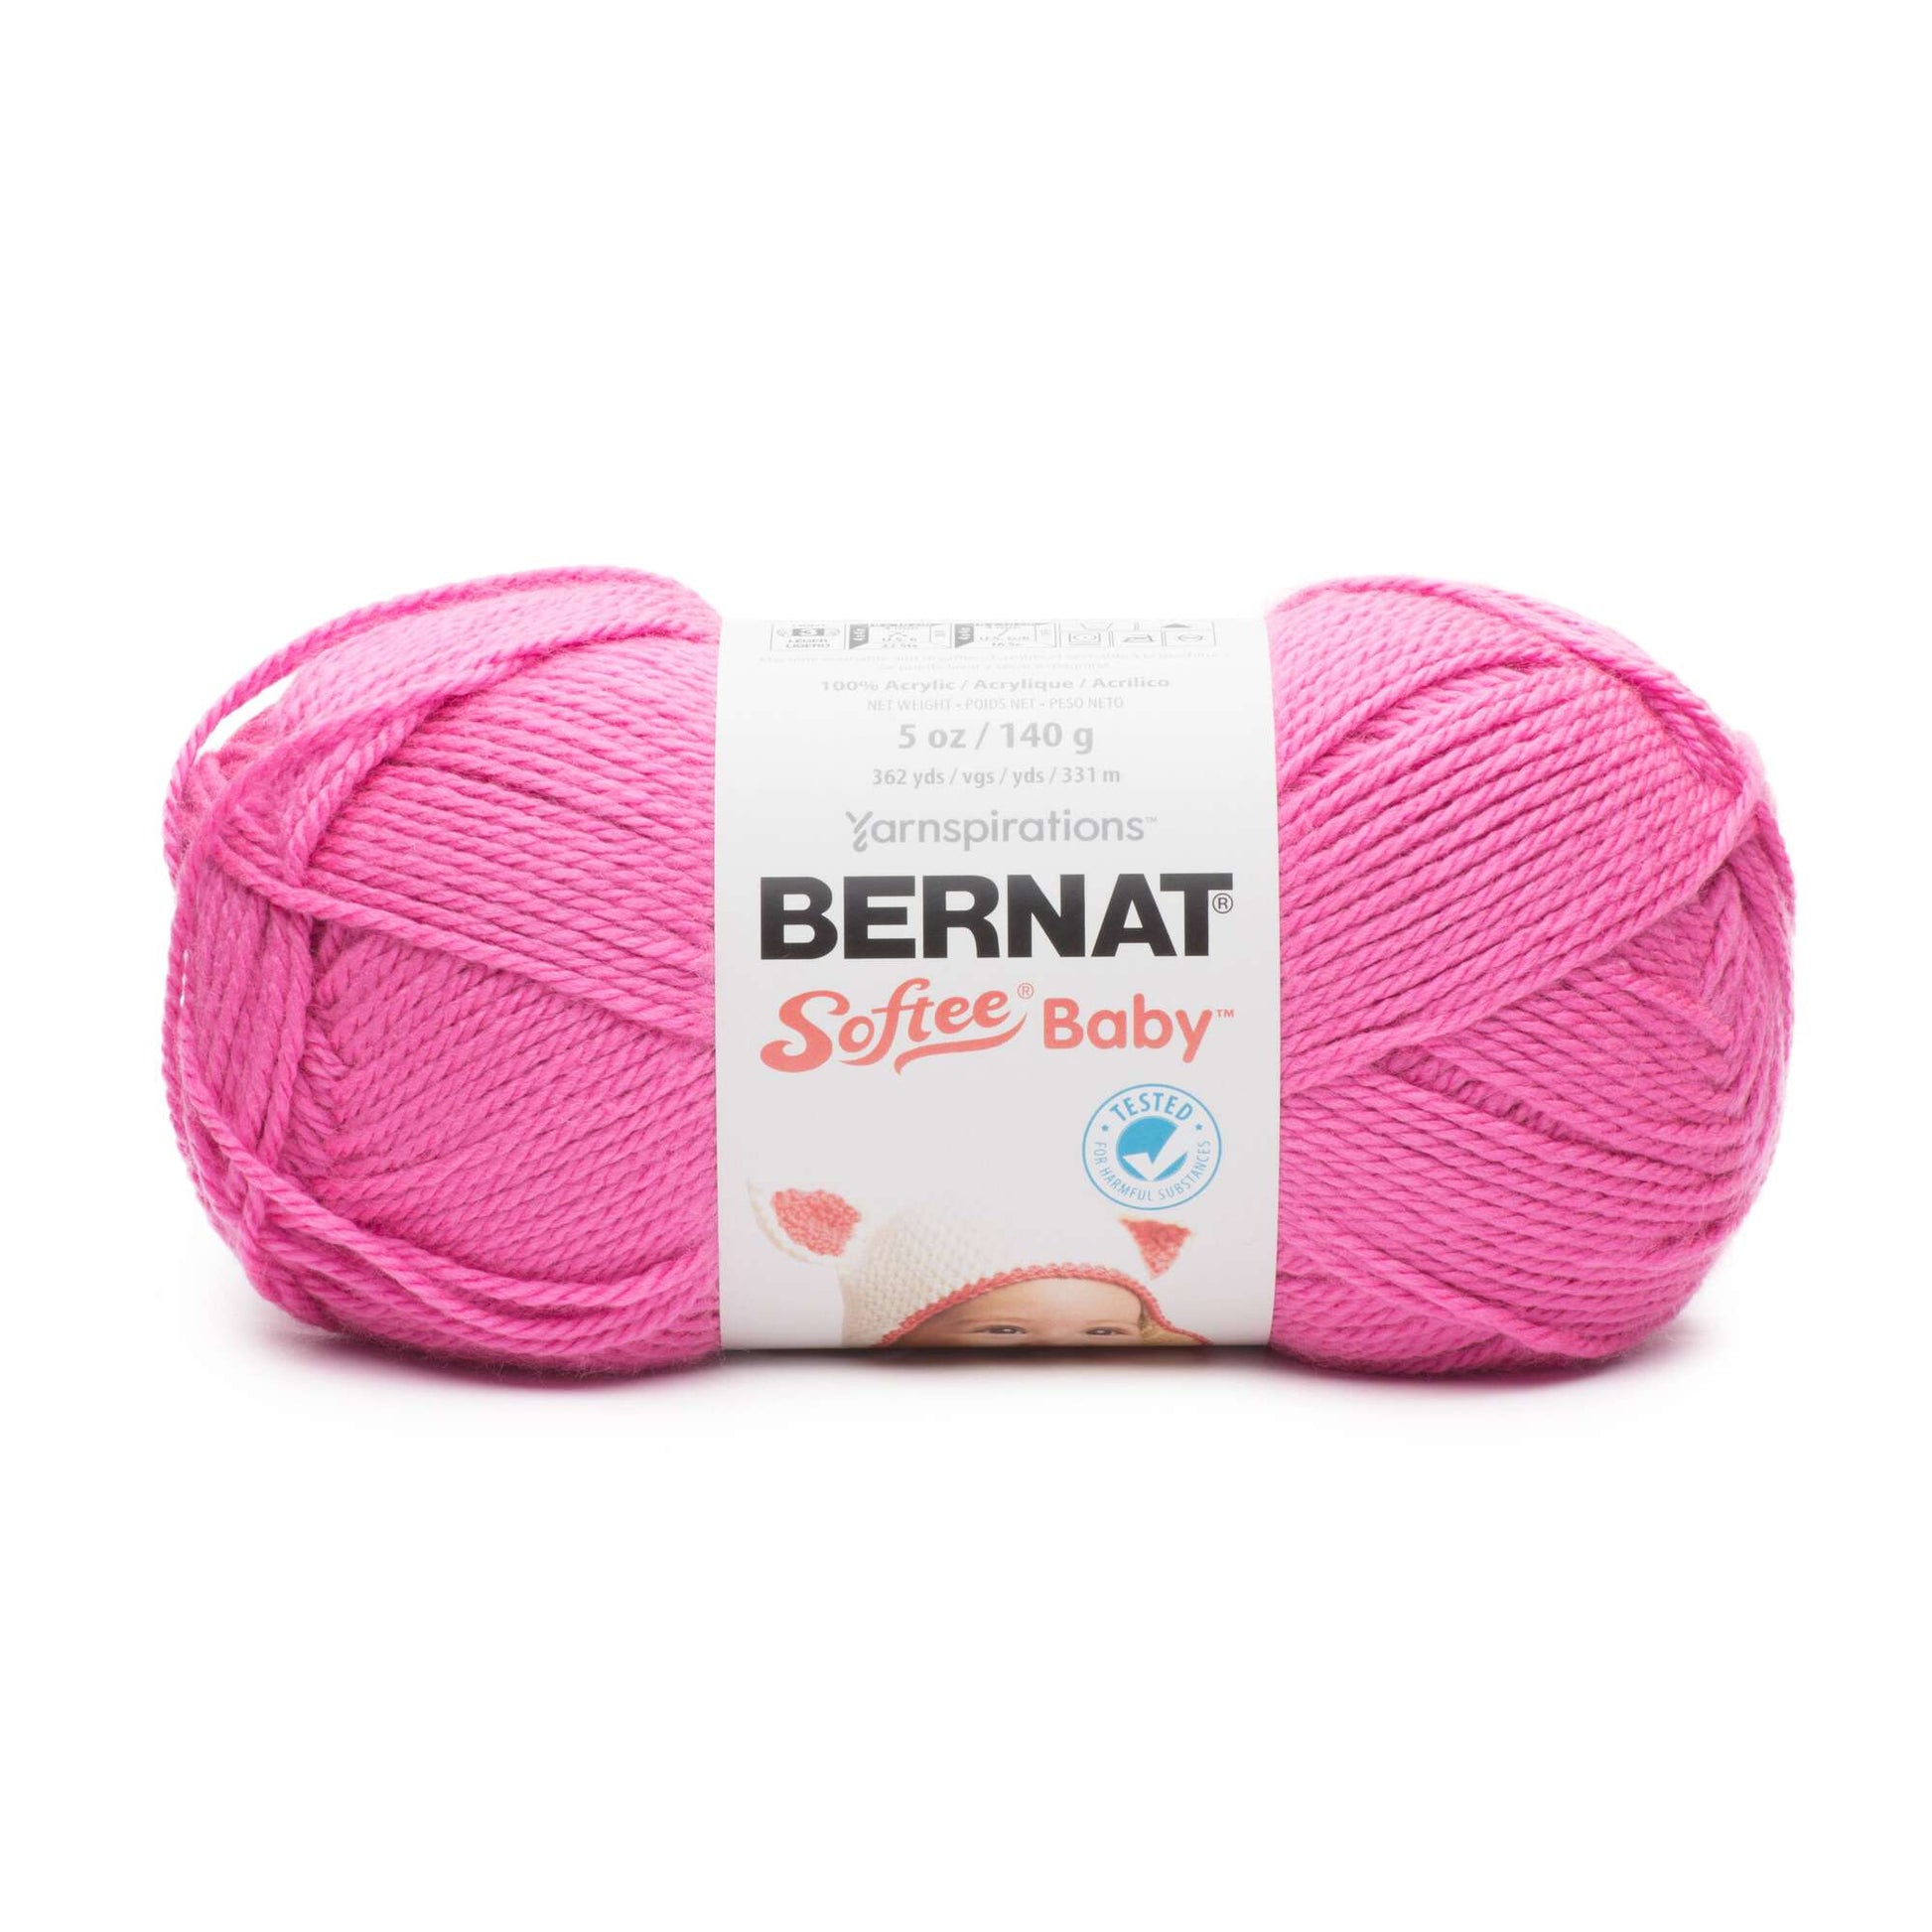 Bernat Softee Baby Yarn - Solids Little Mouse